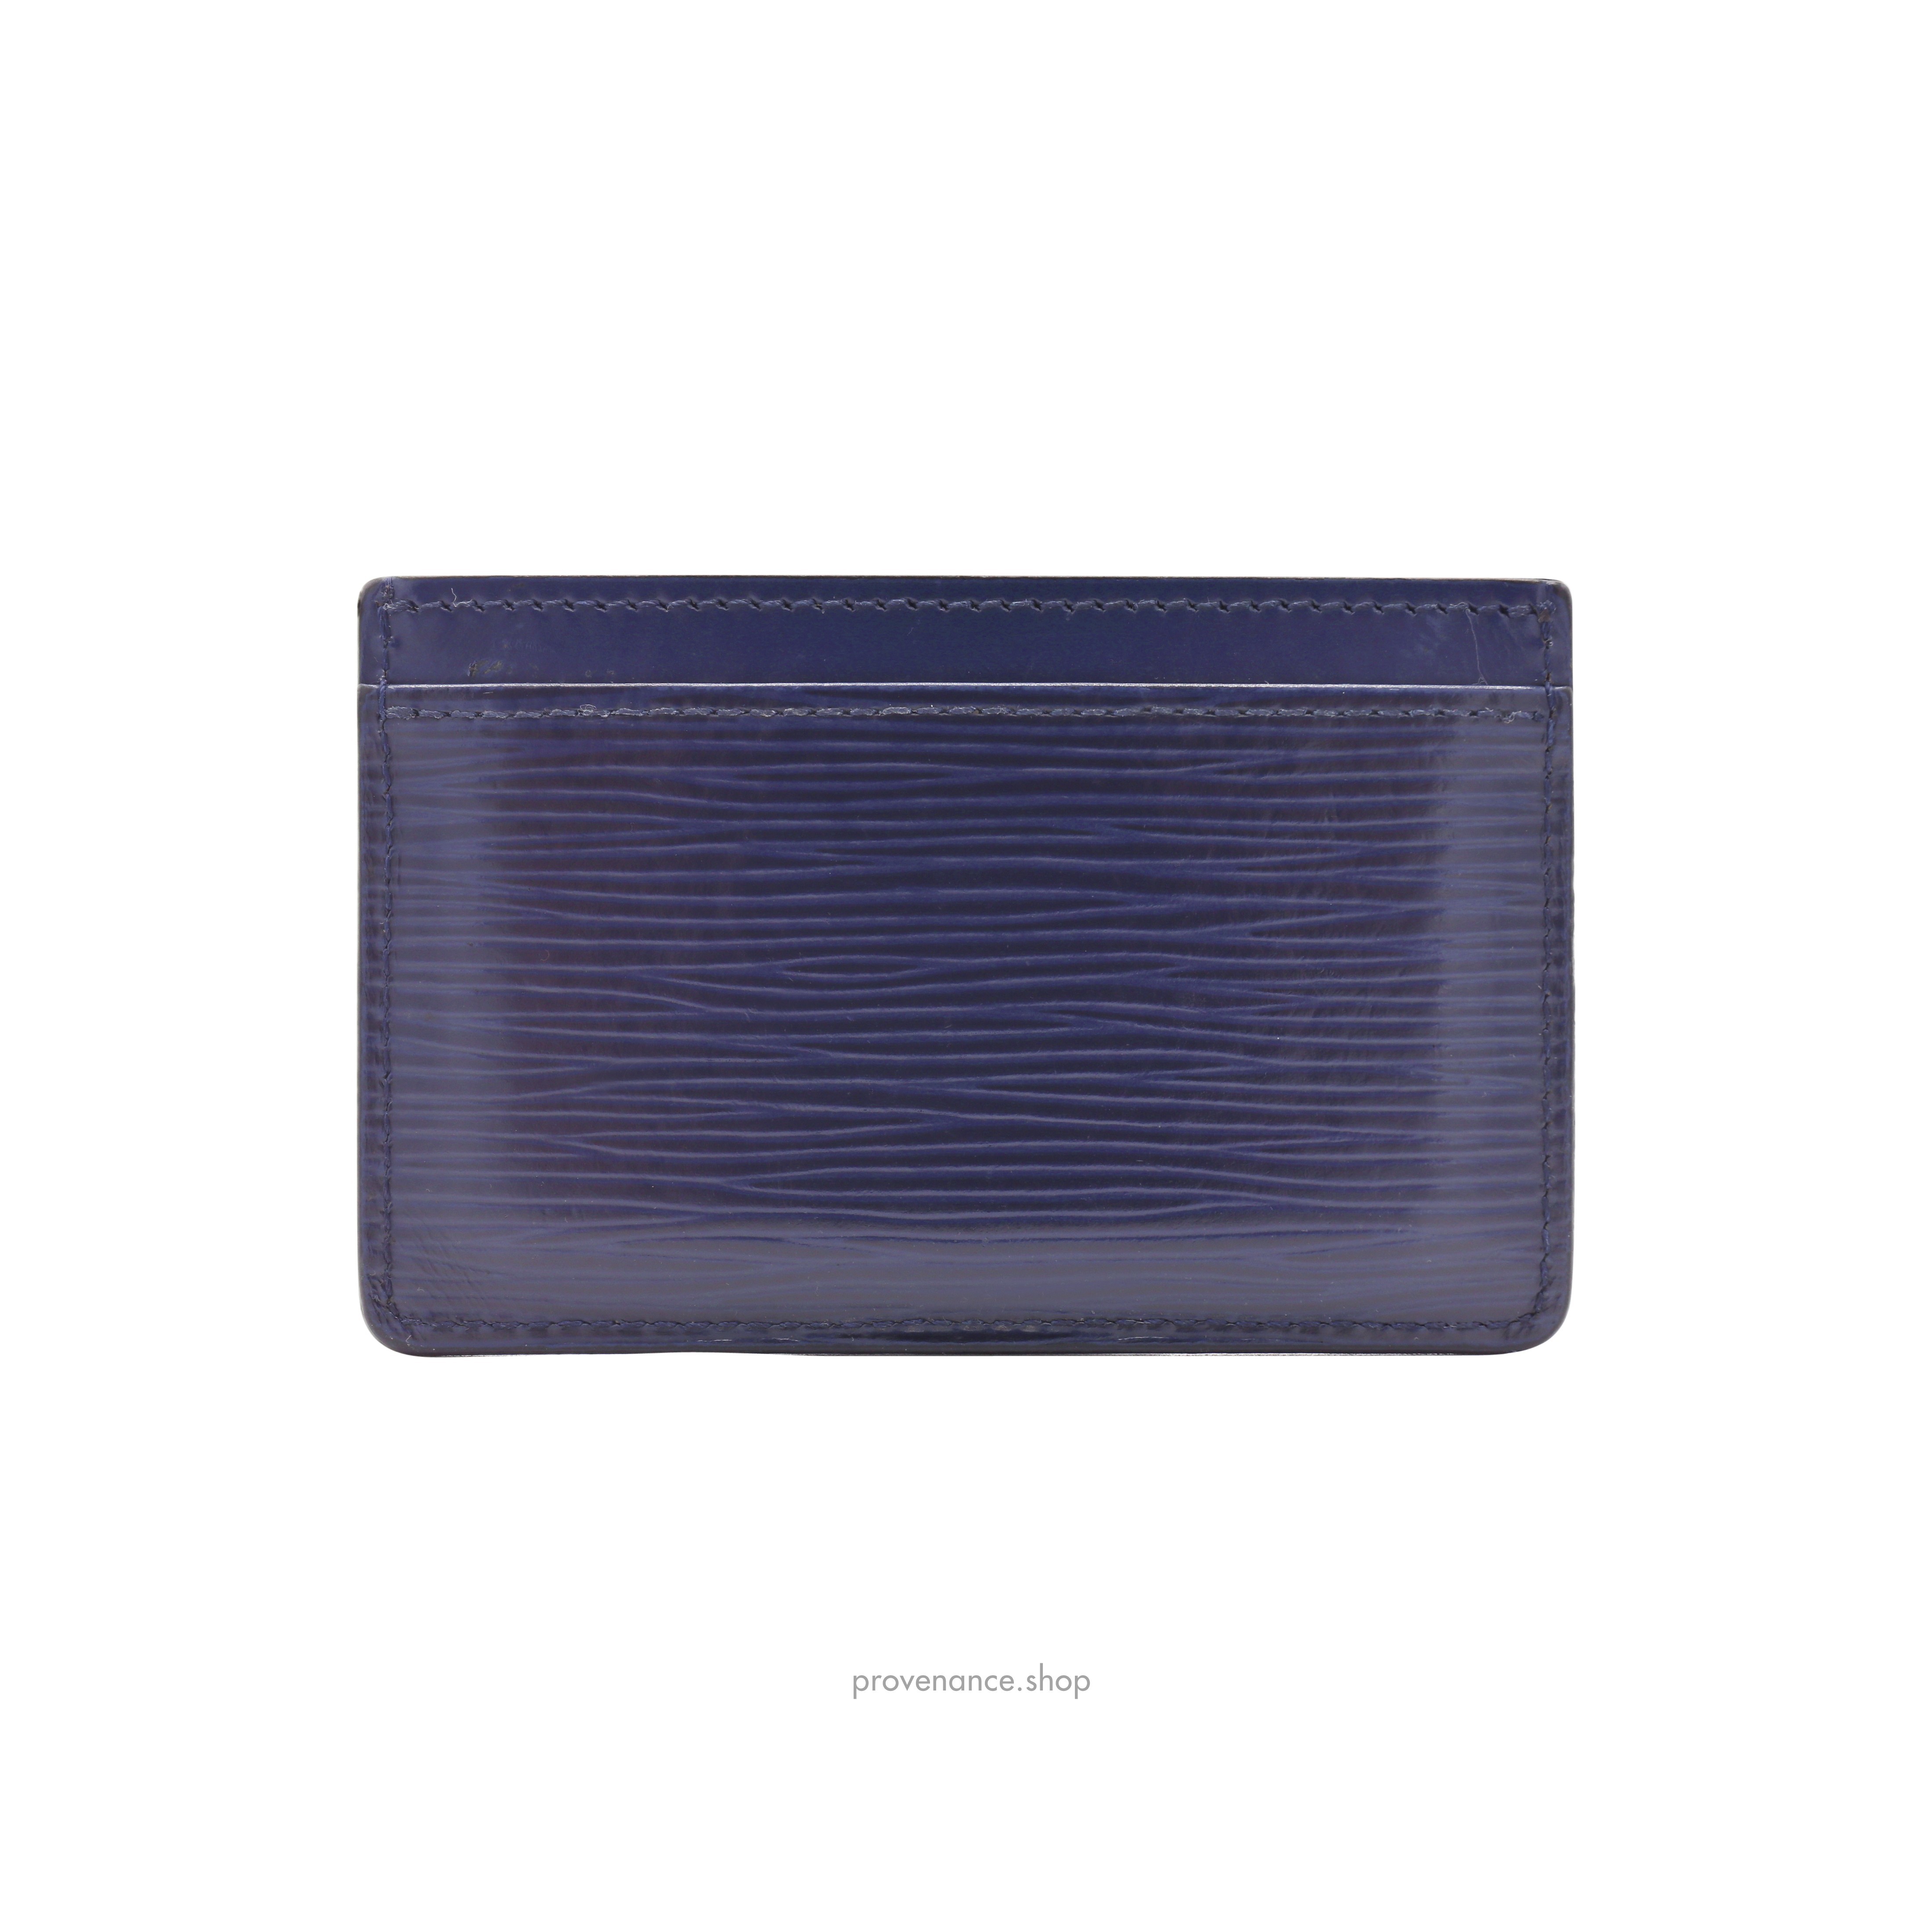 Card Holder Wallet - Navy Blue Epi Leather - 4